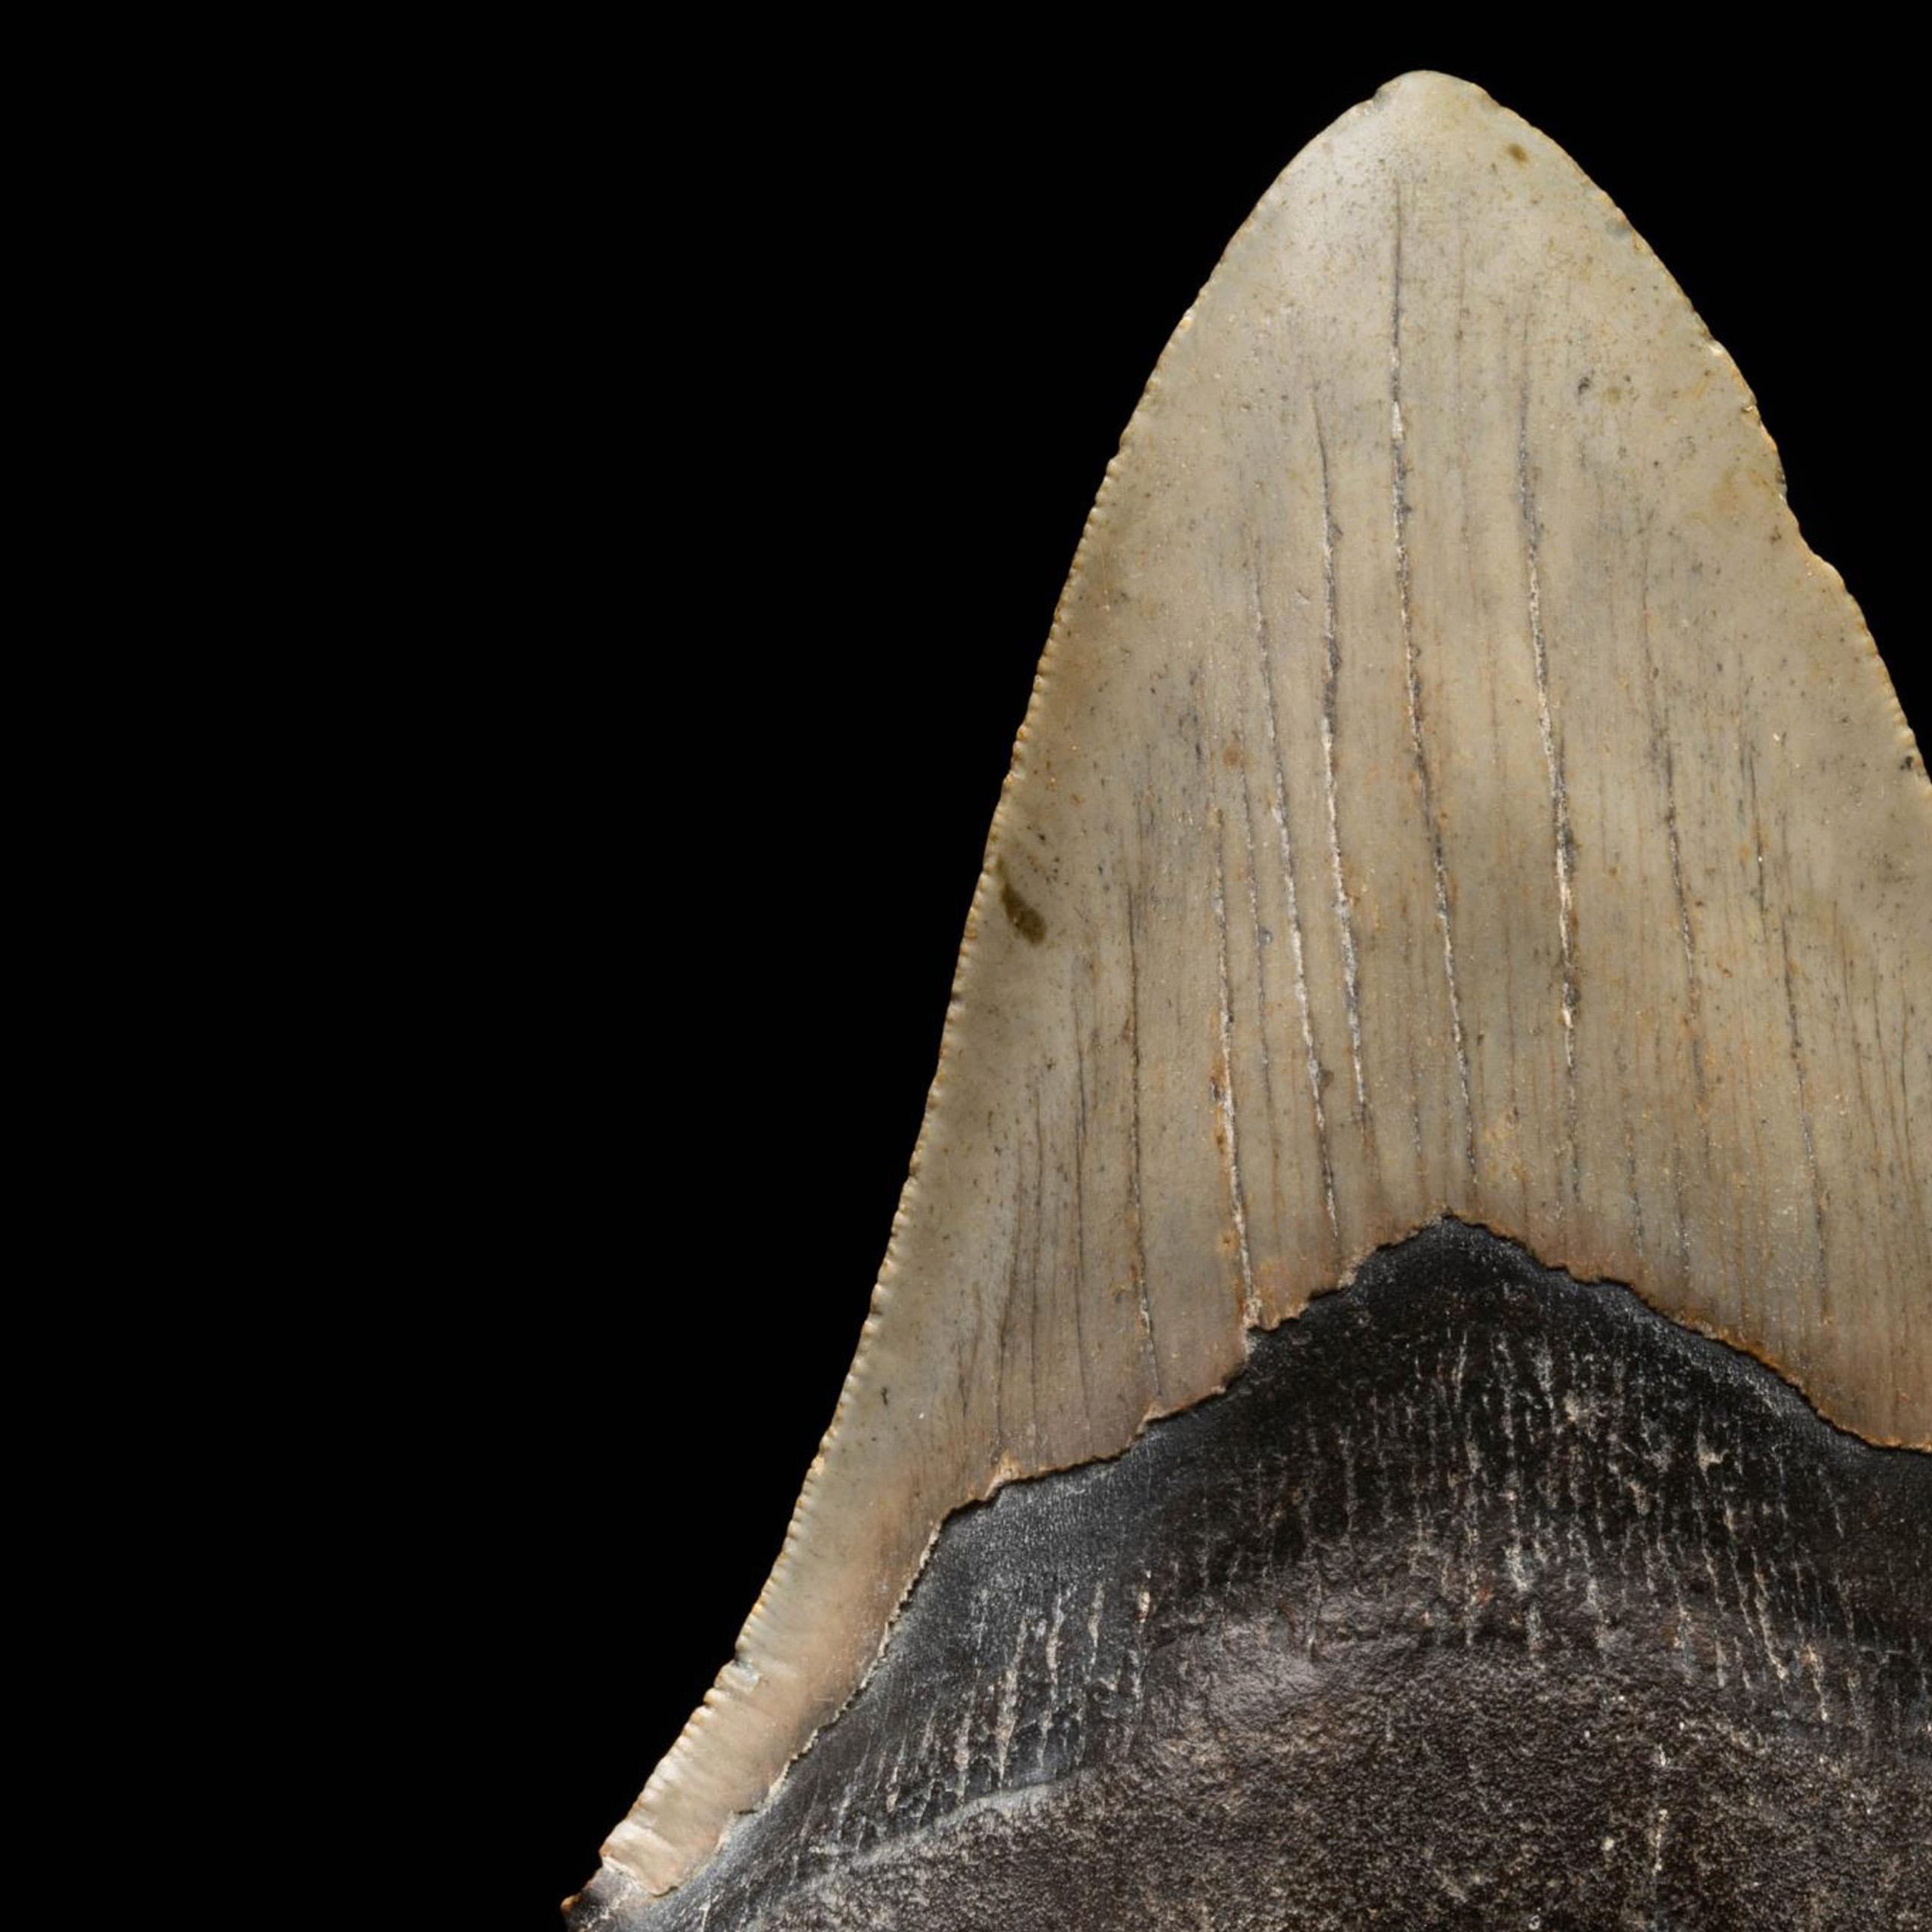 Dieser riesige, 5,67 Zoll große Megalodon-Zahn aus South Carolina, USA, ist fünf bis zehn Millionen Jahre alt. Der Megalodon war der massivste Raubhai, der je gelebt hat. Mit einer Länge von 70 Fuß und mehr beherrschten diese Giganten die Ozeane